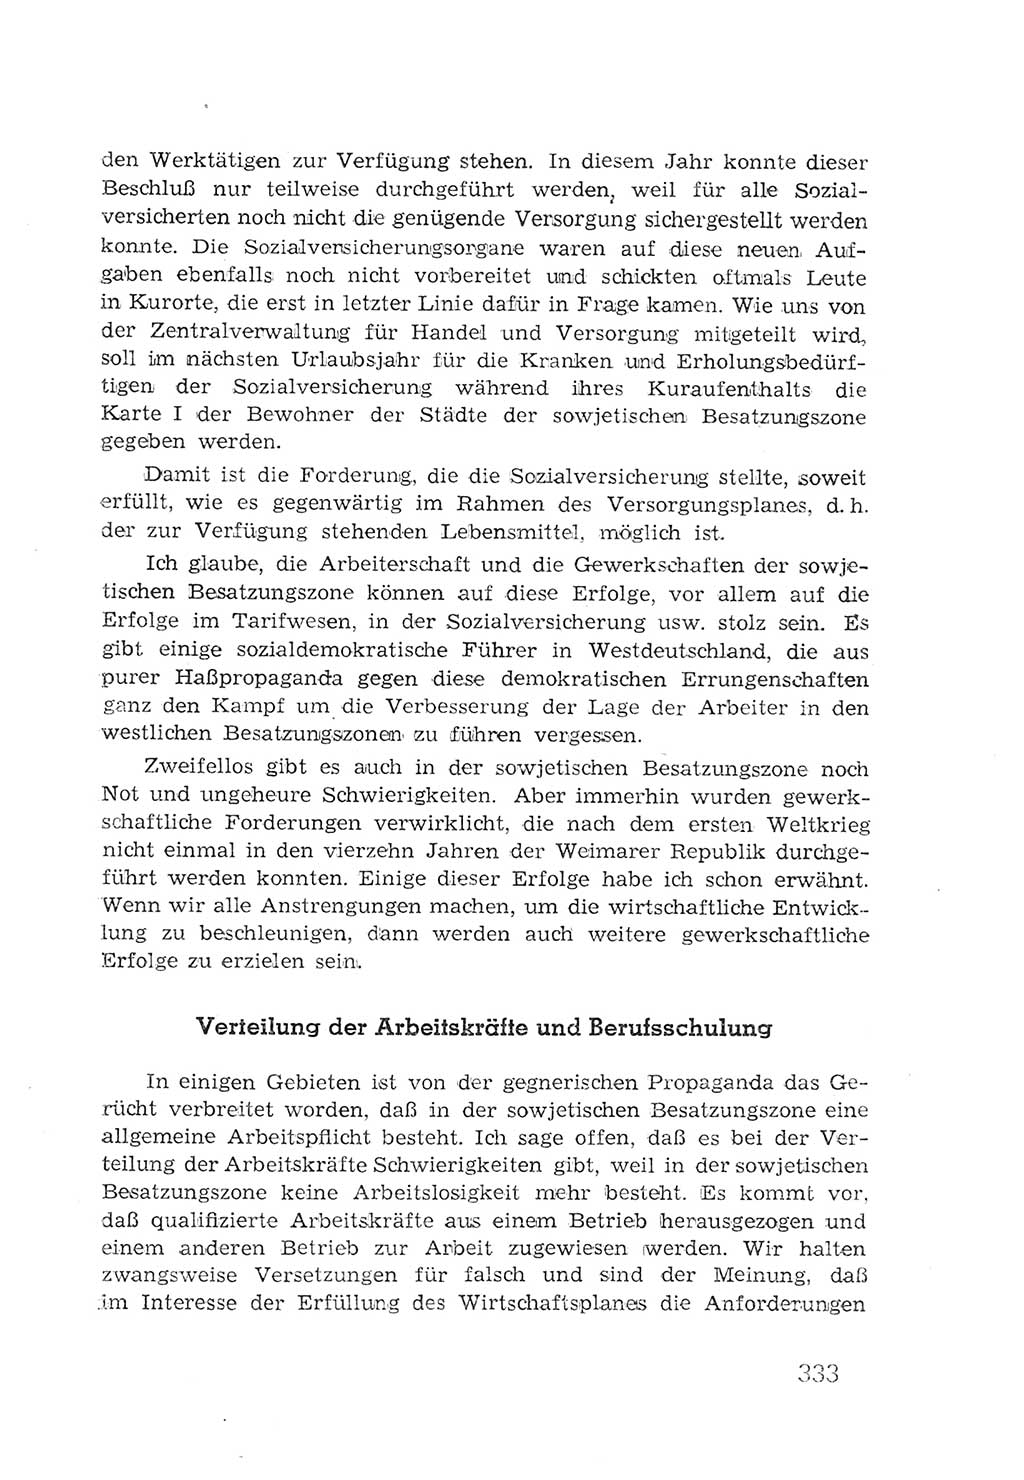 Protokoll der Verhandlungen des 2. Parteitages der Sozialistischen Einheitspartei Deutschlands (SED) [Sowjetische Besatzungszone (SBZ) Deutschlands] 1947, Seite 333 (Prot. Verh. 2. PT SED SBZ Dtl. 1947, S. 333)